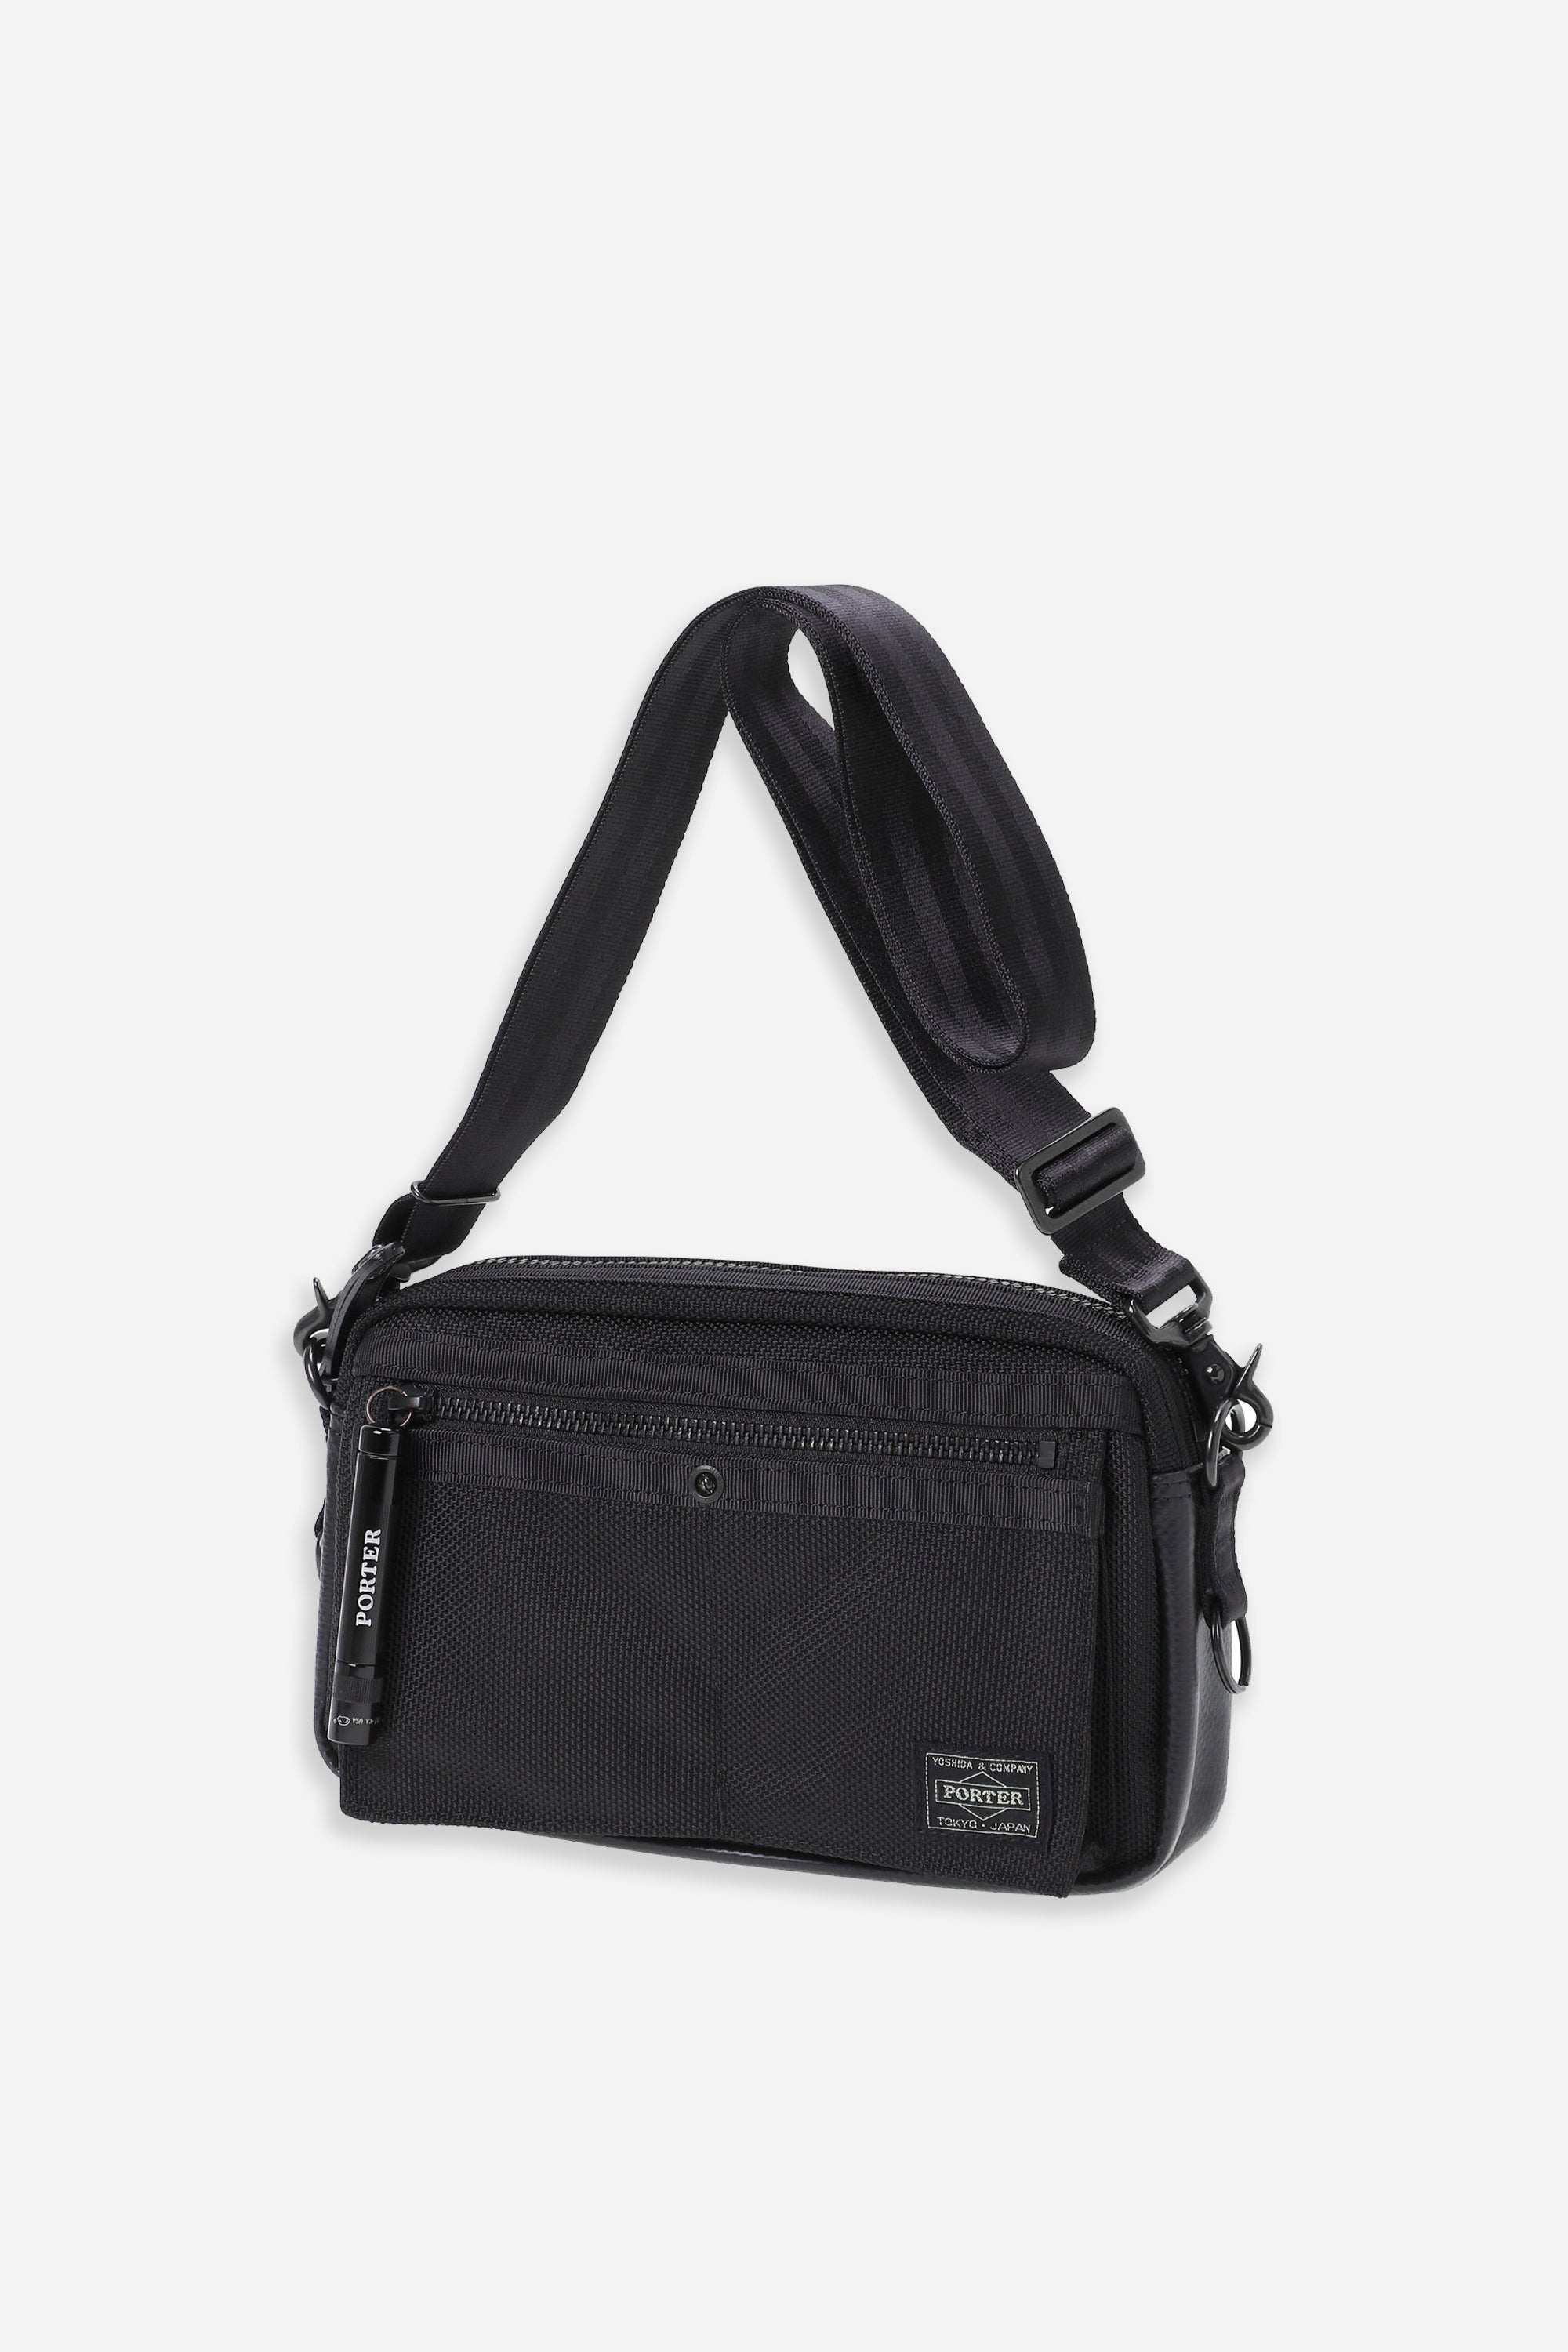 Porter Yoshida & Co. Heat Shoulder Bag Black – HAVN